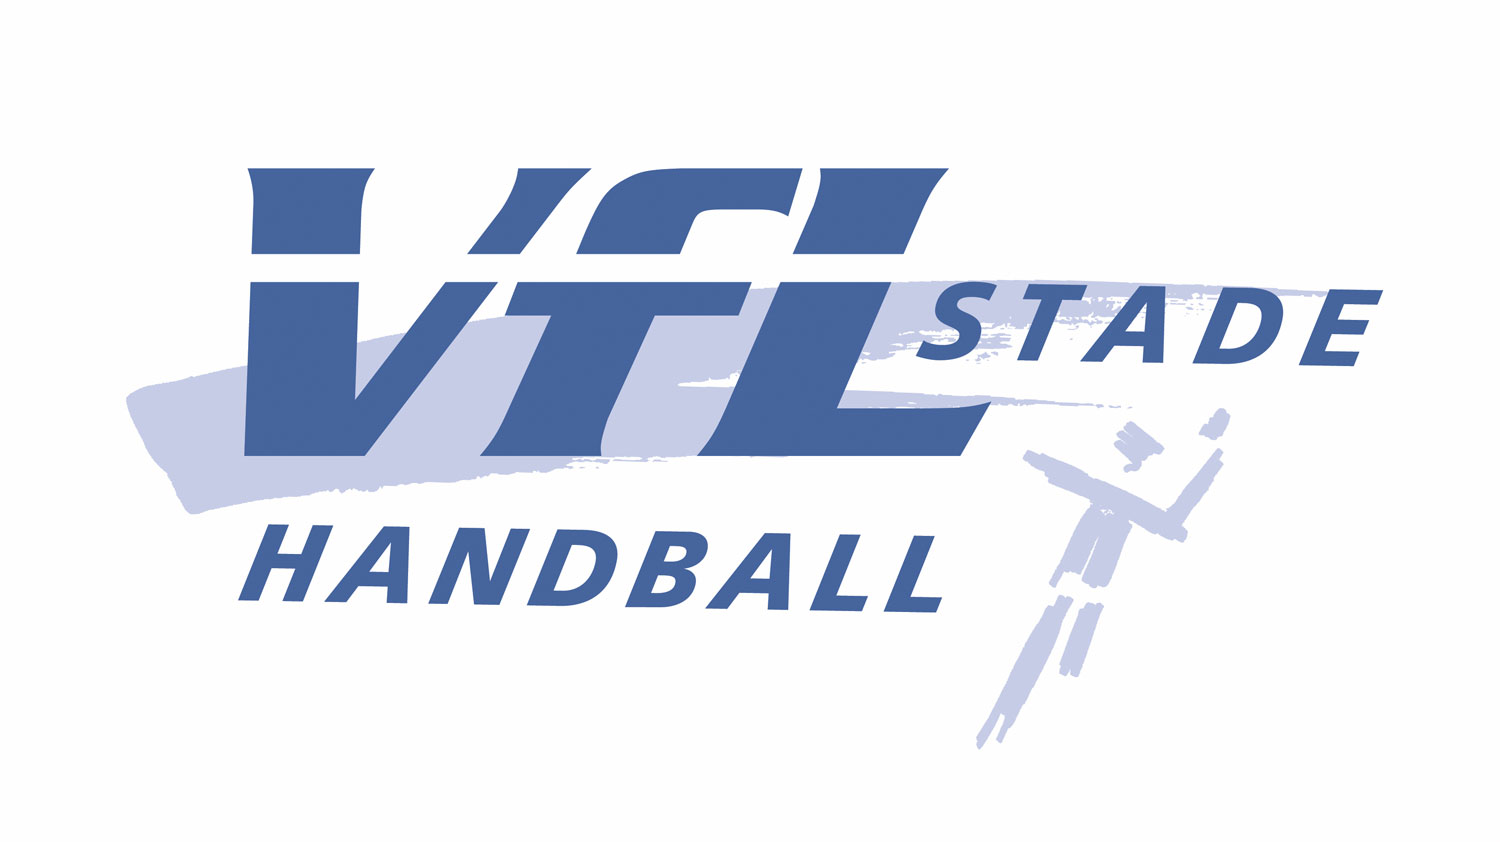 Vfl Stade Handball